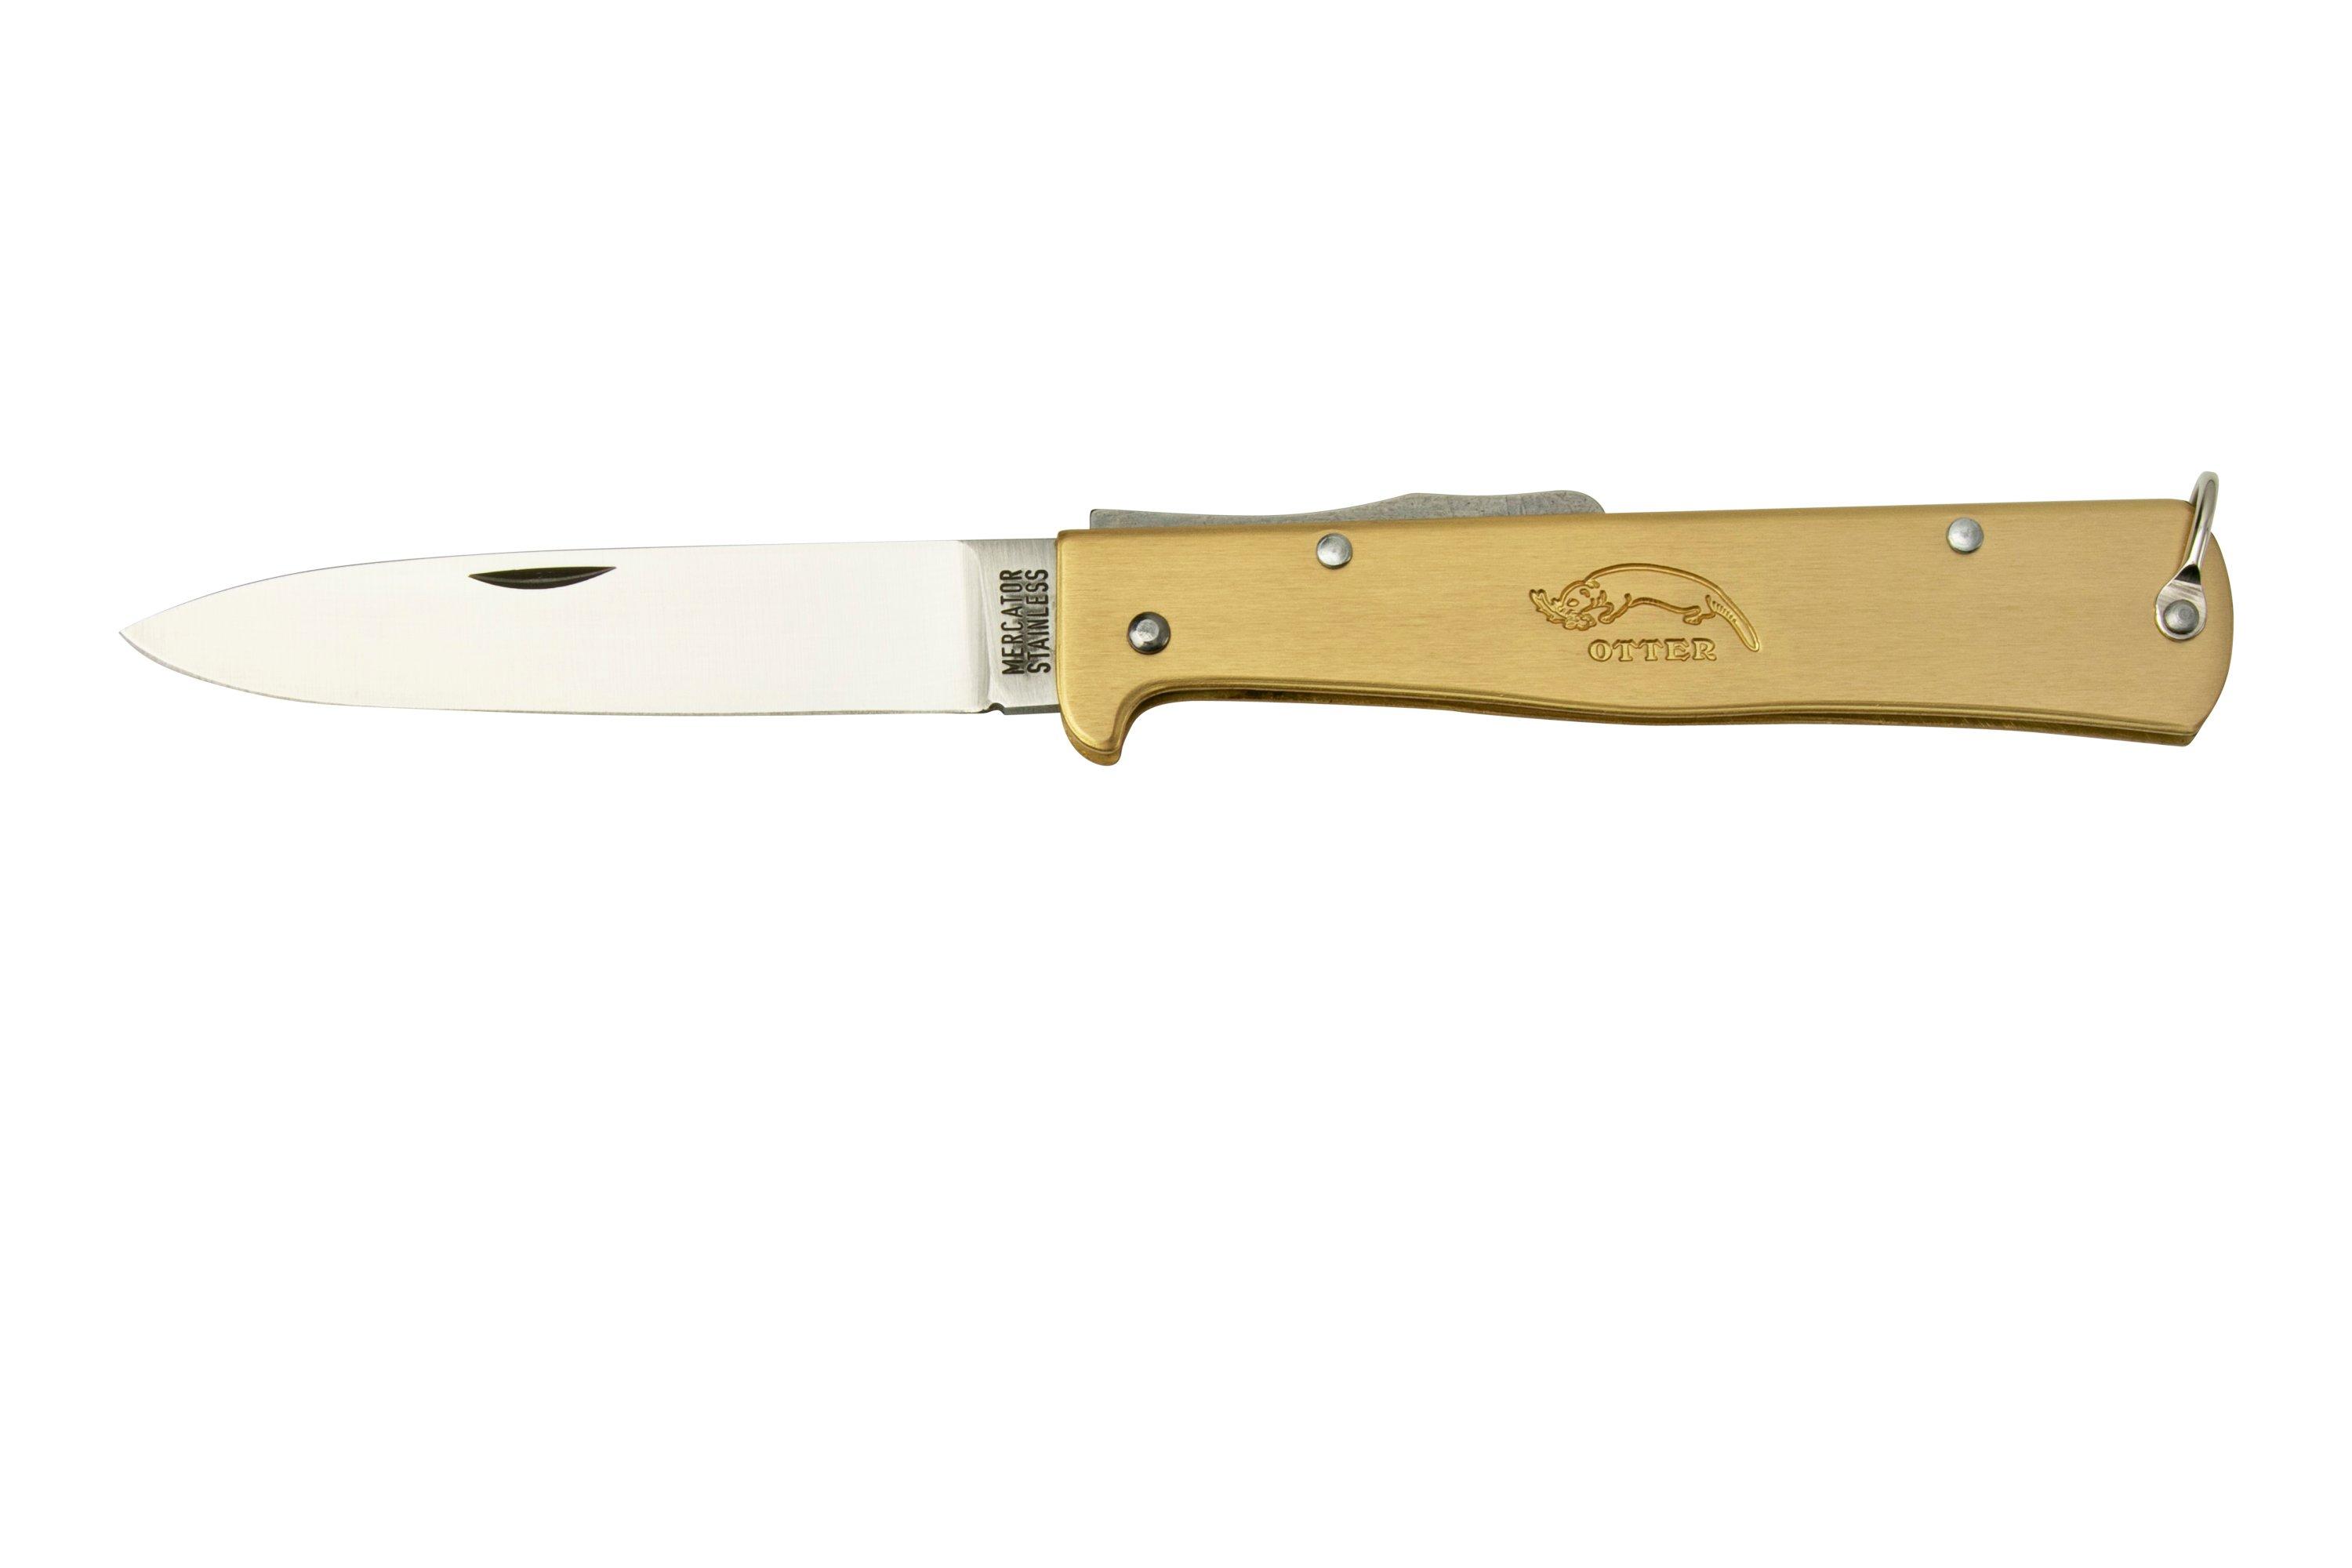 OTTER MERCATOR knife completely stainless, Mercator, Otter Messer, Brands